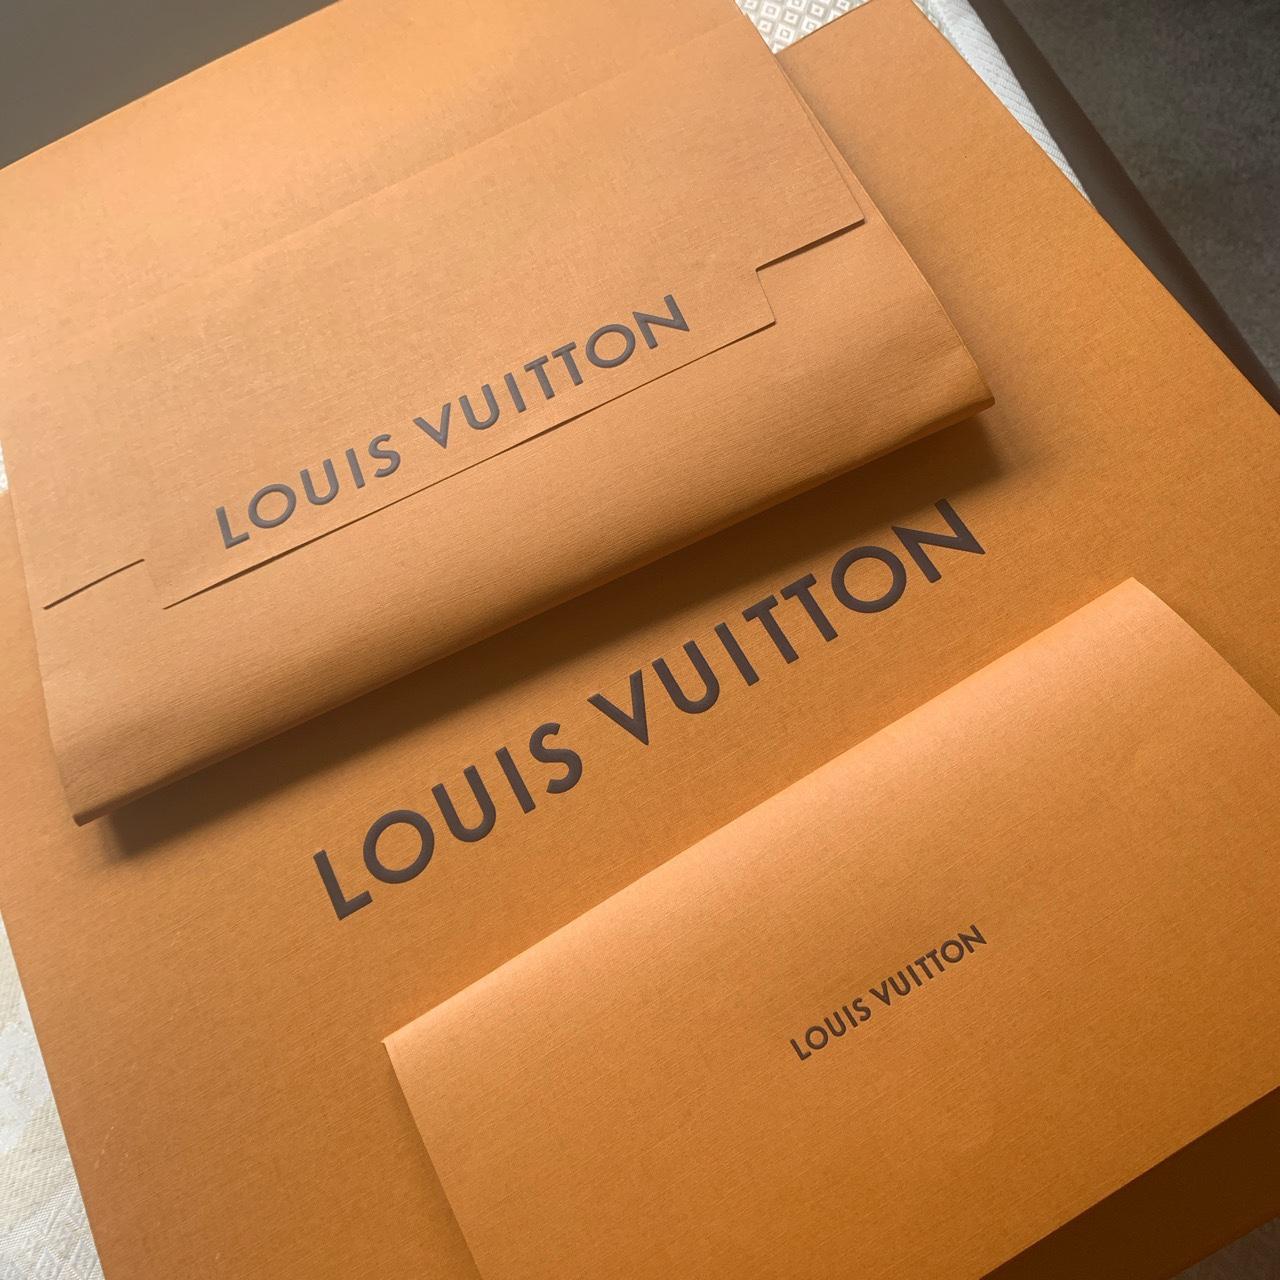 Louis Vuitton Logomania a la folie scarf - Depop